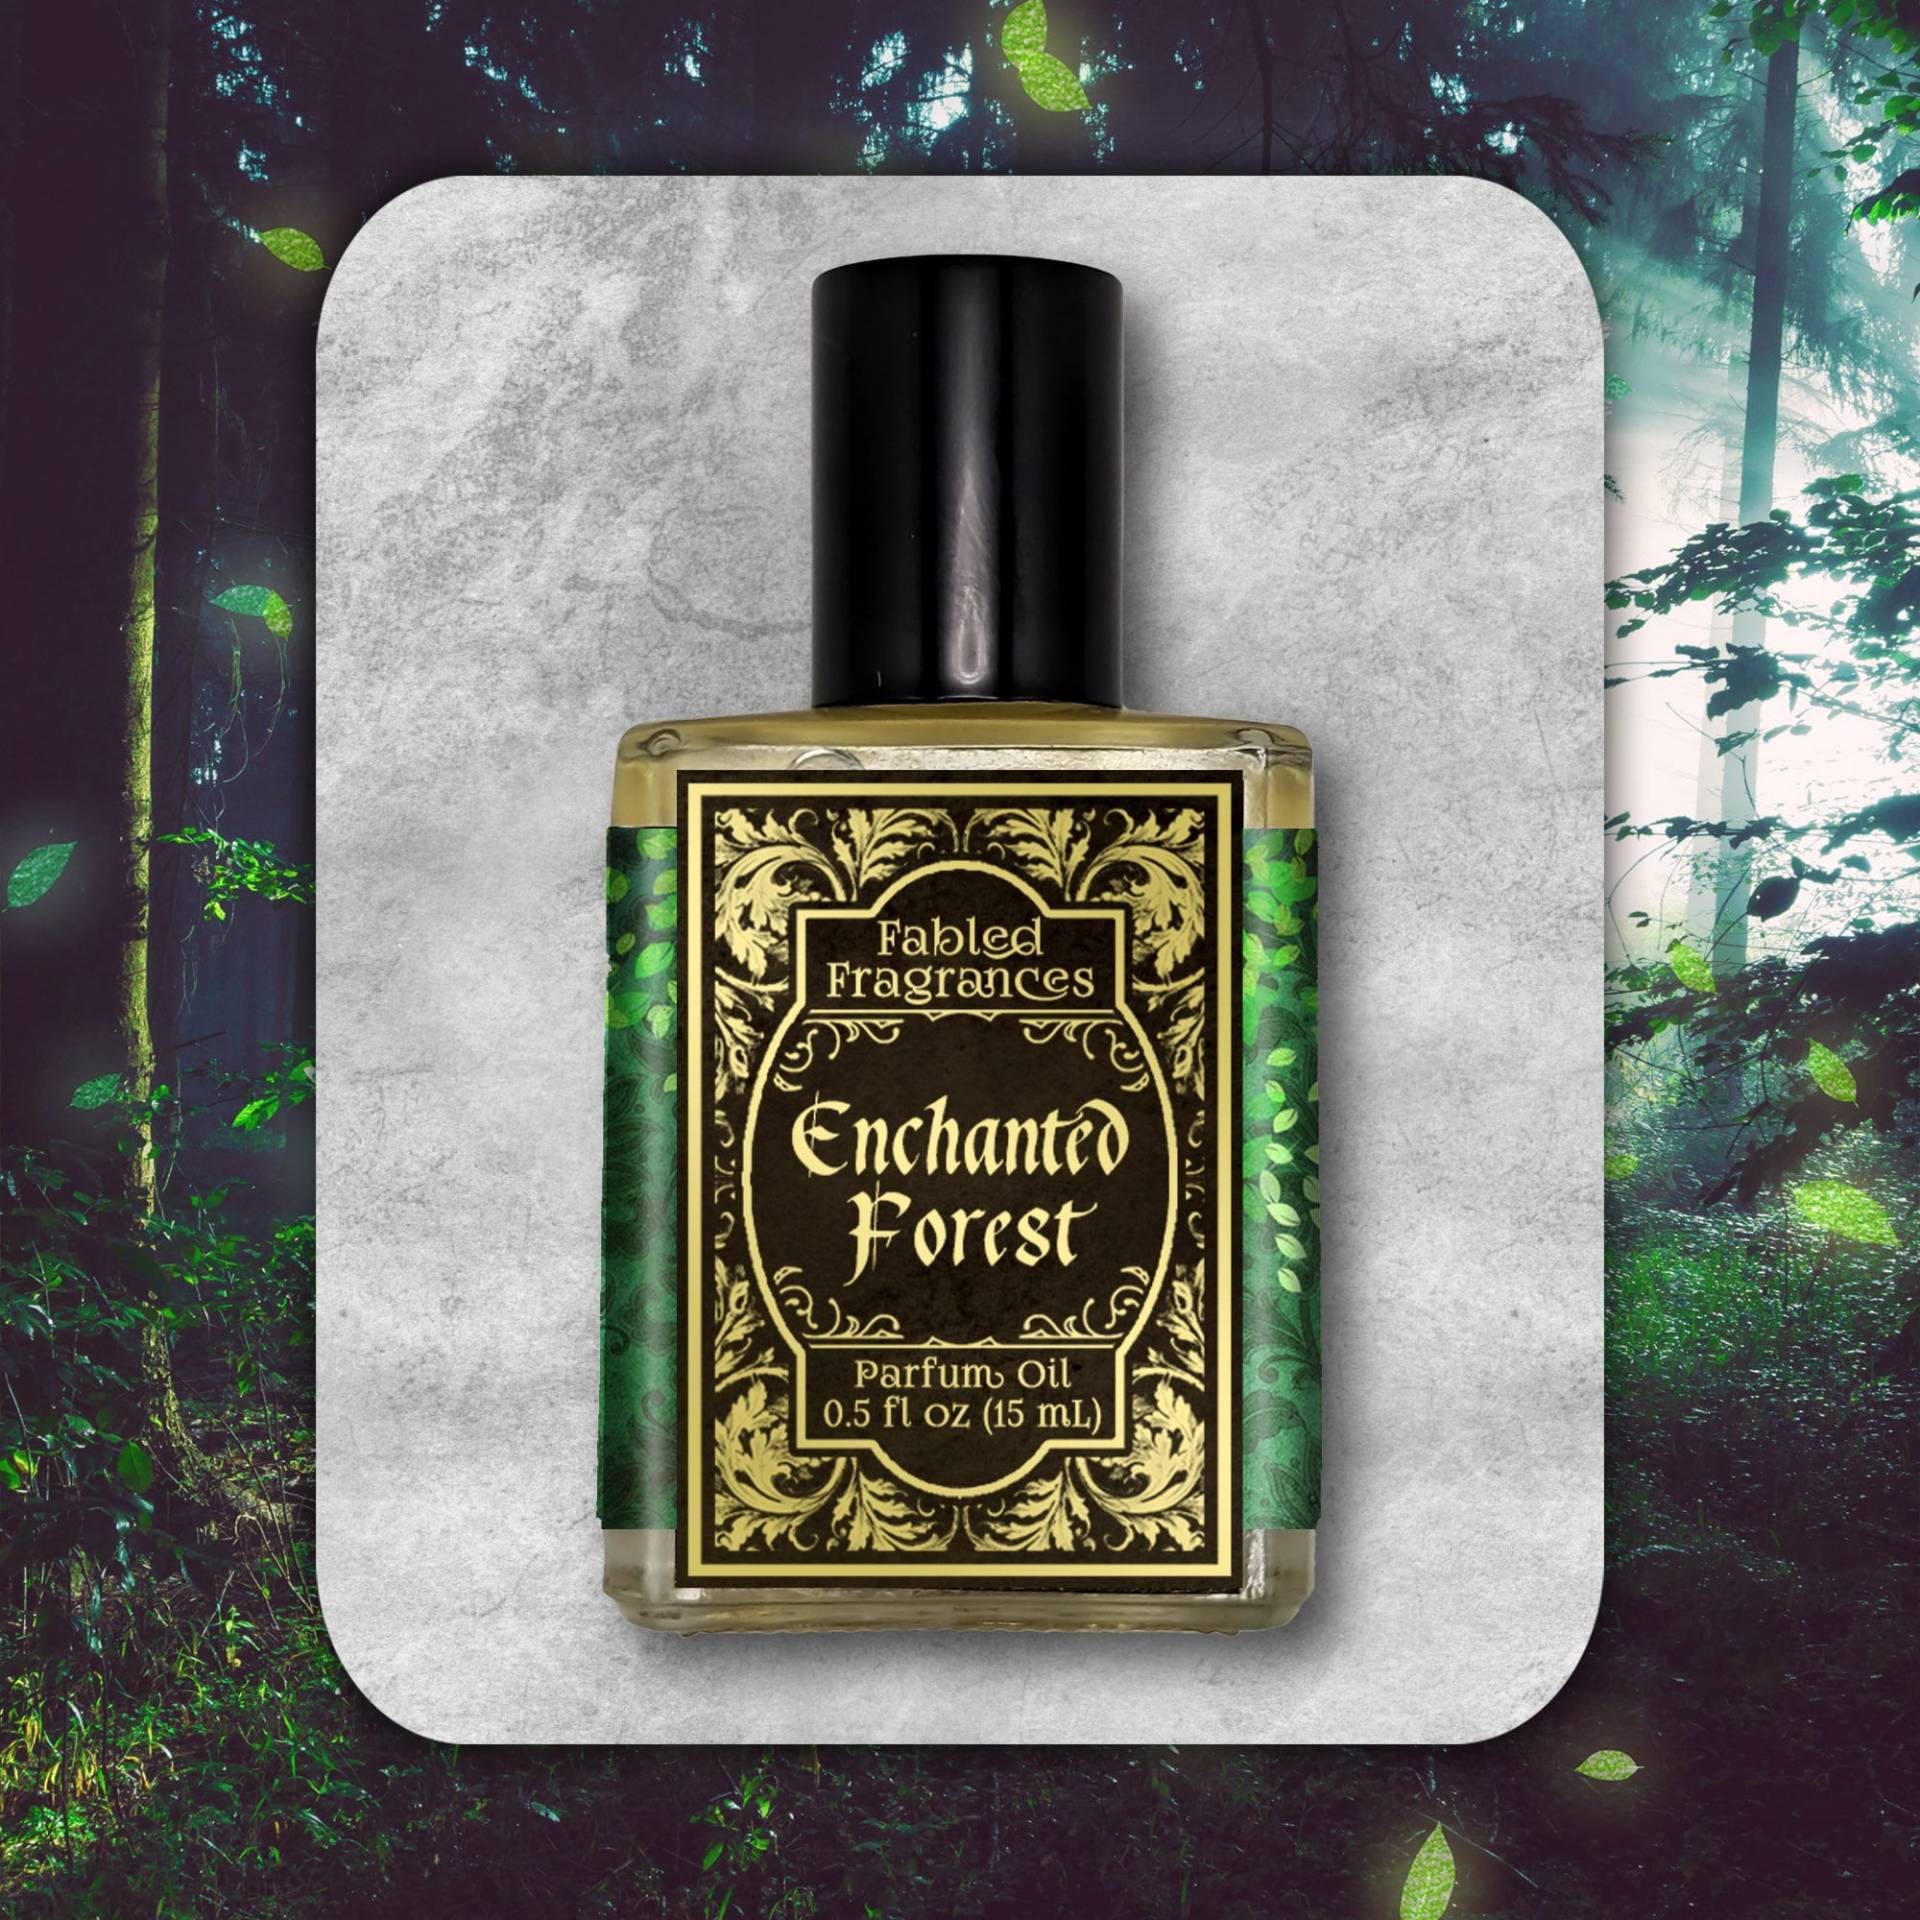 Enchanted Forest Parfümöl Mit Magnolie, Glyzinie, Neroli, Hyazinthe, Eichenmoos, Zedernholz, Tanne, Märchenduft, Tat 6-8 Biz Days von FabledFragrances